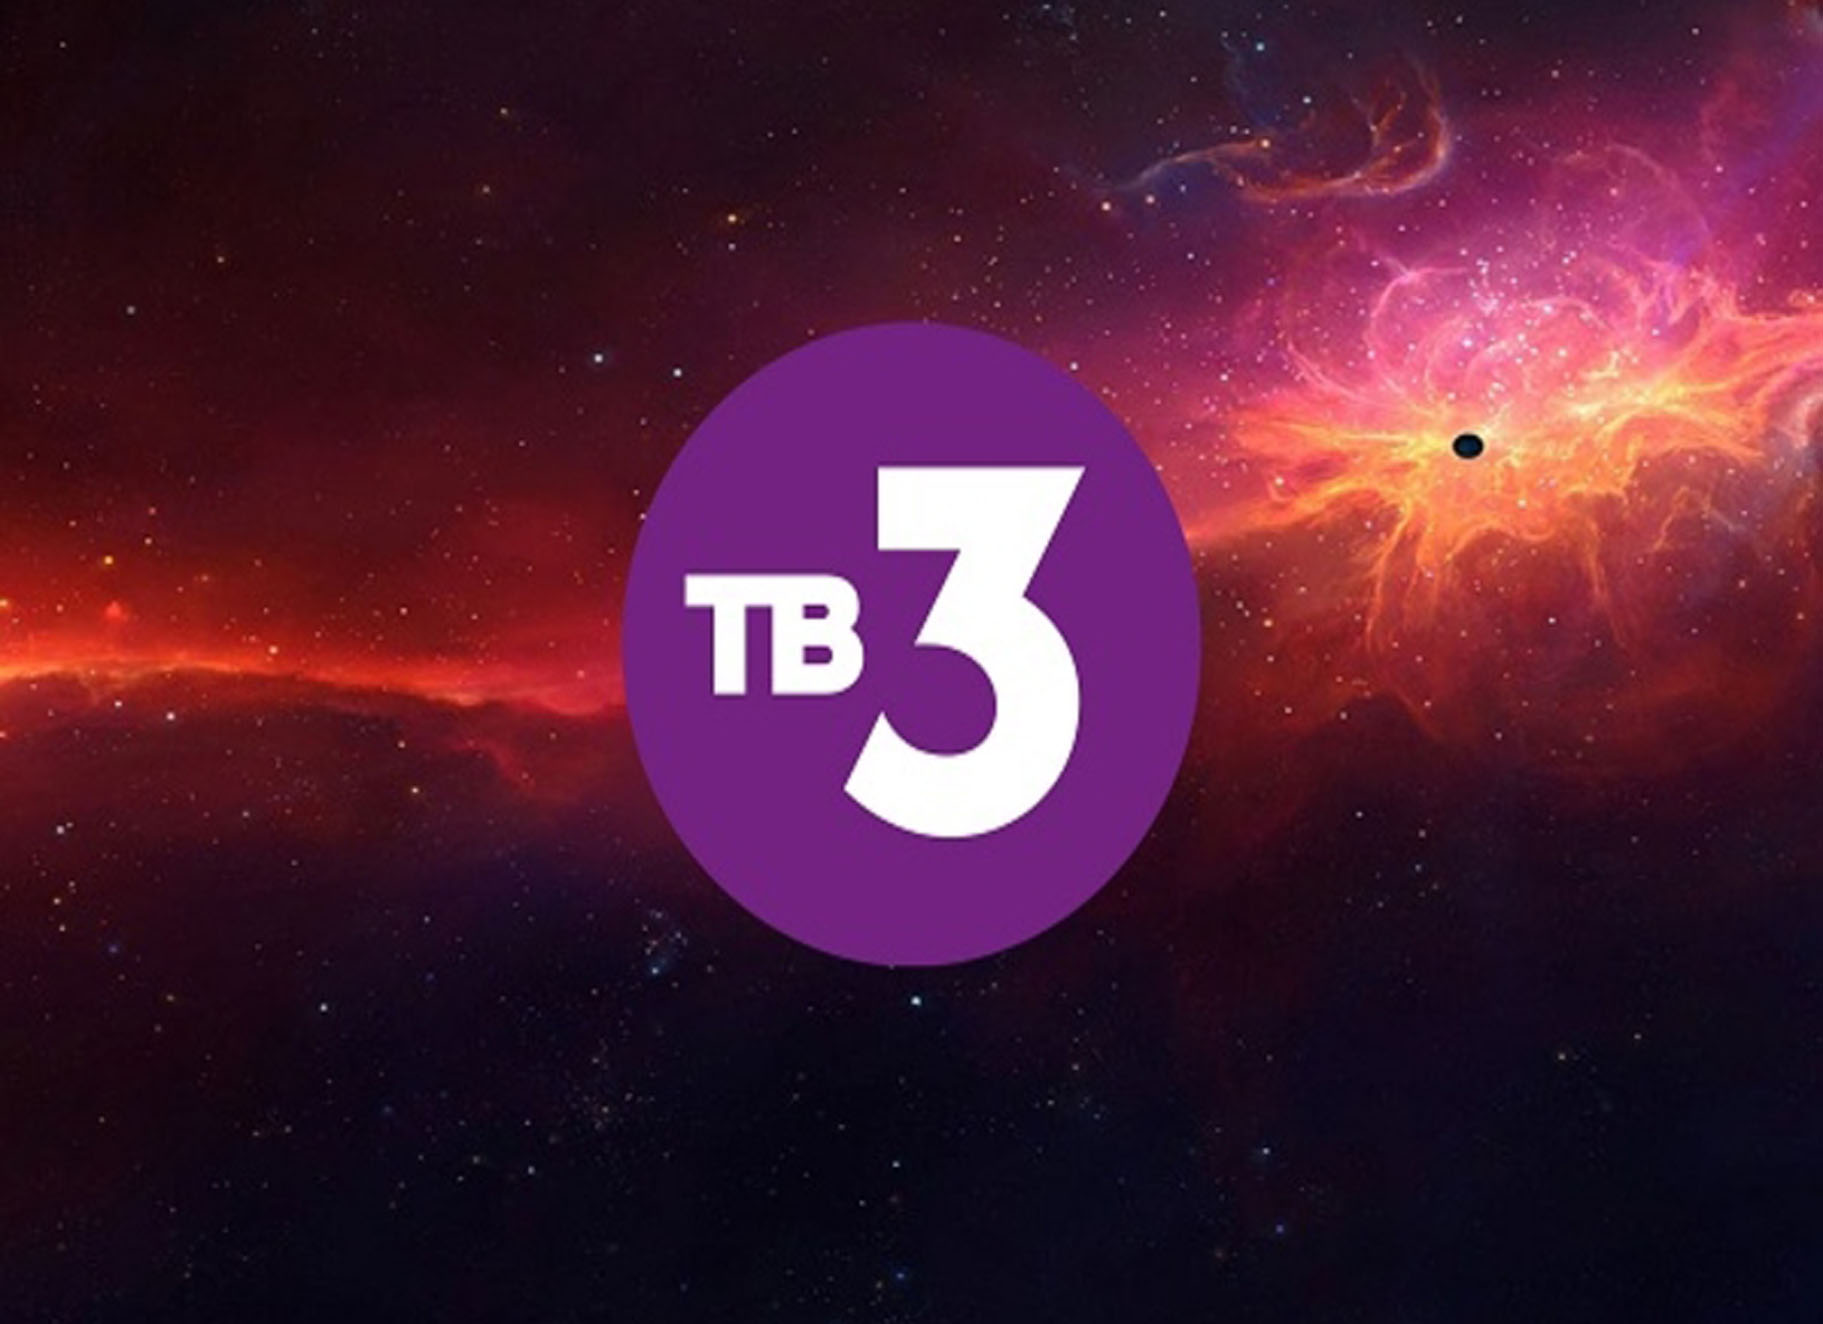 Тв3 сейчас прямой эфир программа. Канал тв3. Тв3 логотип. Логотип канала тв3. ТВ 3 эмблема.